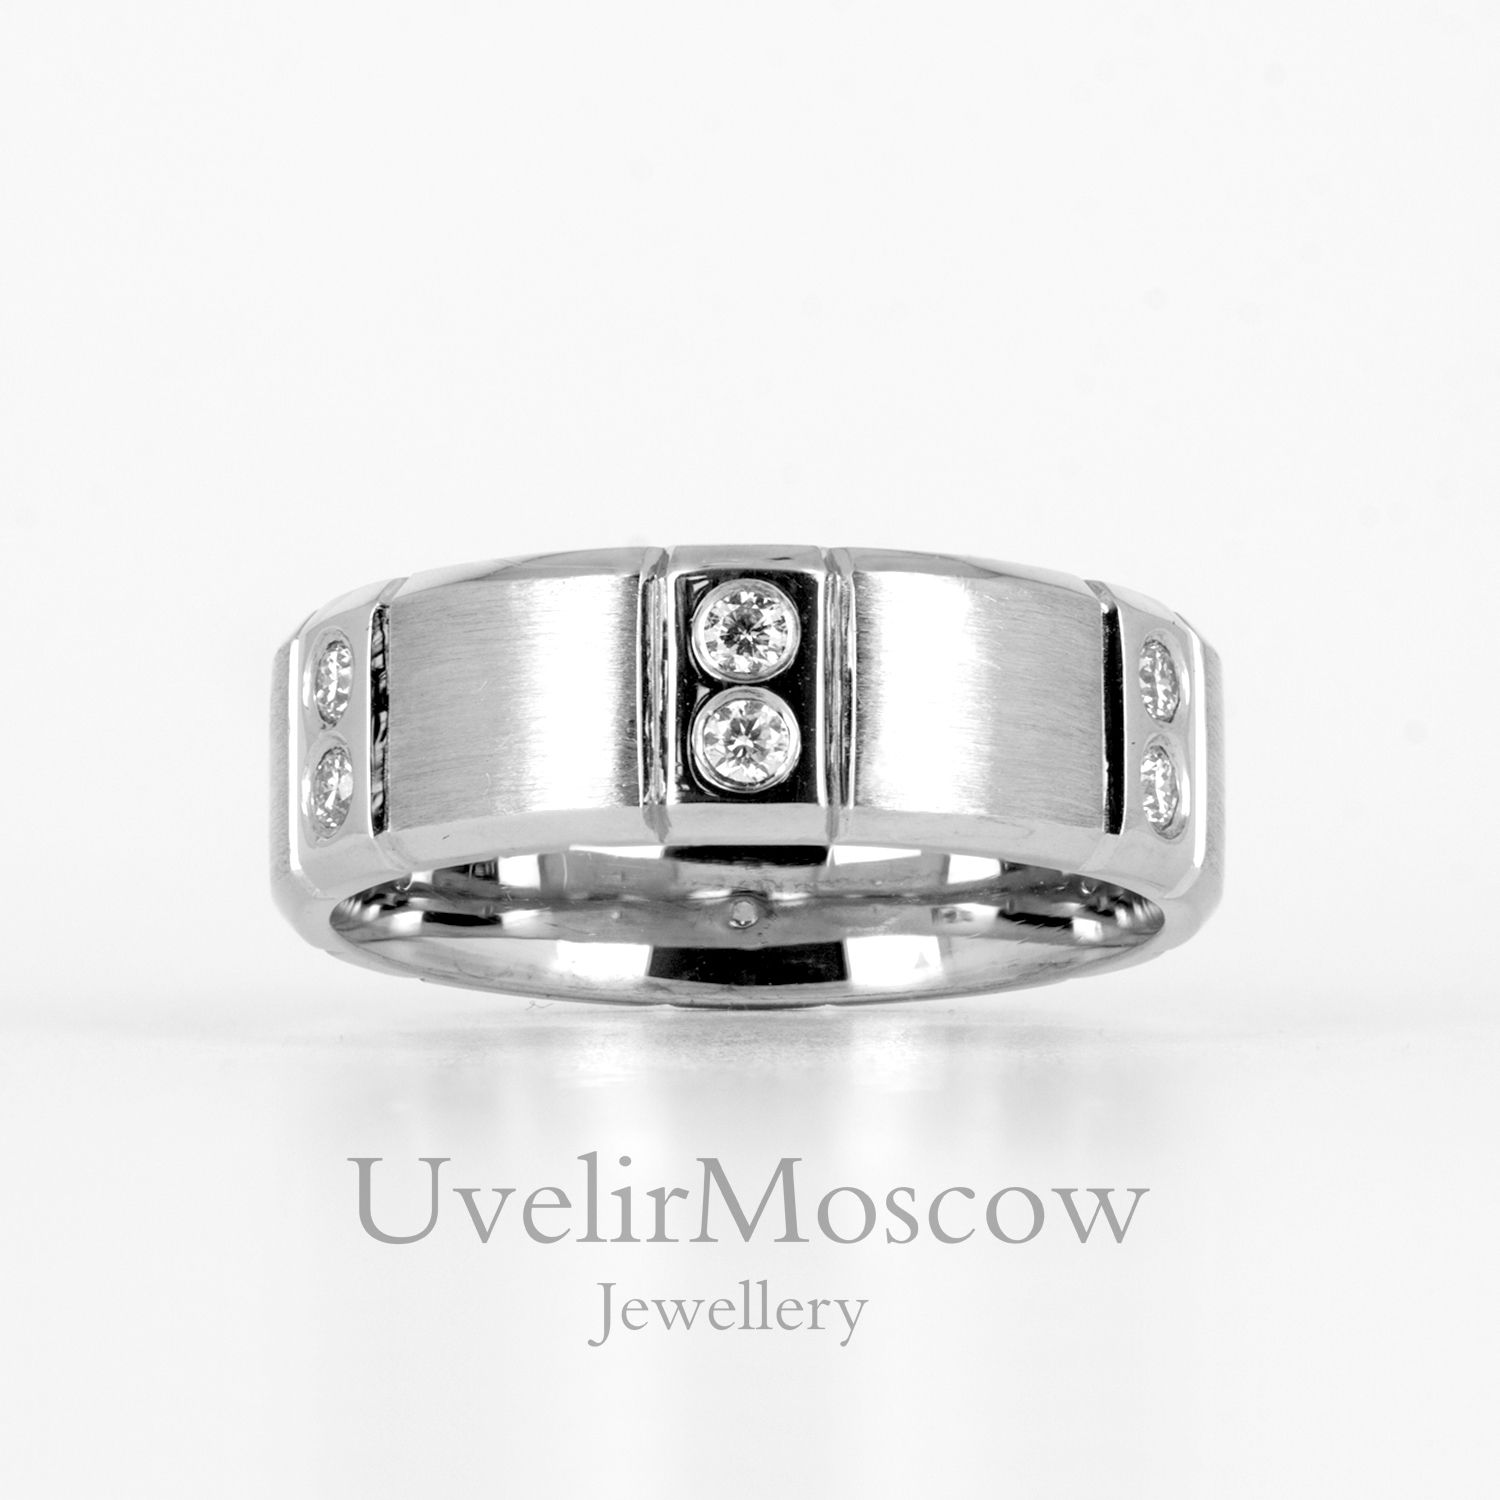 Мужское обручальное кольцо с матовой поверхностью и бриллиантами